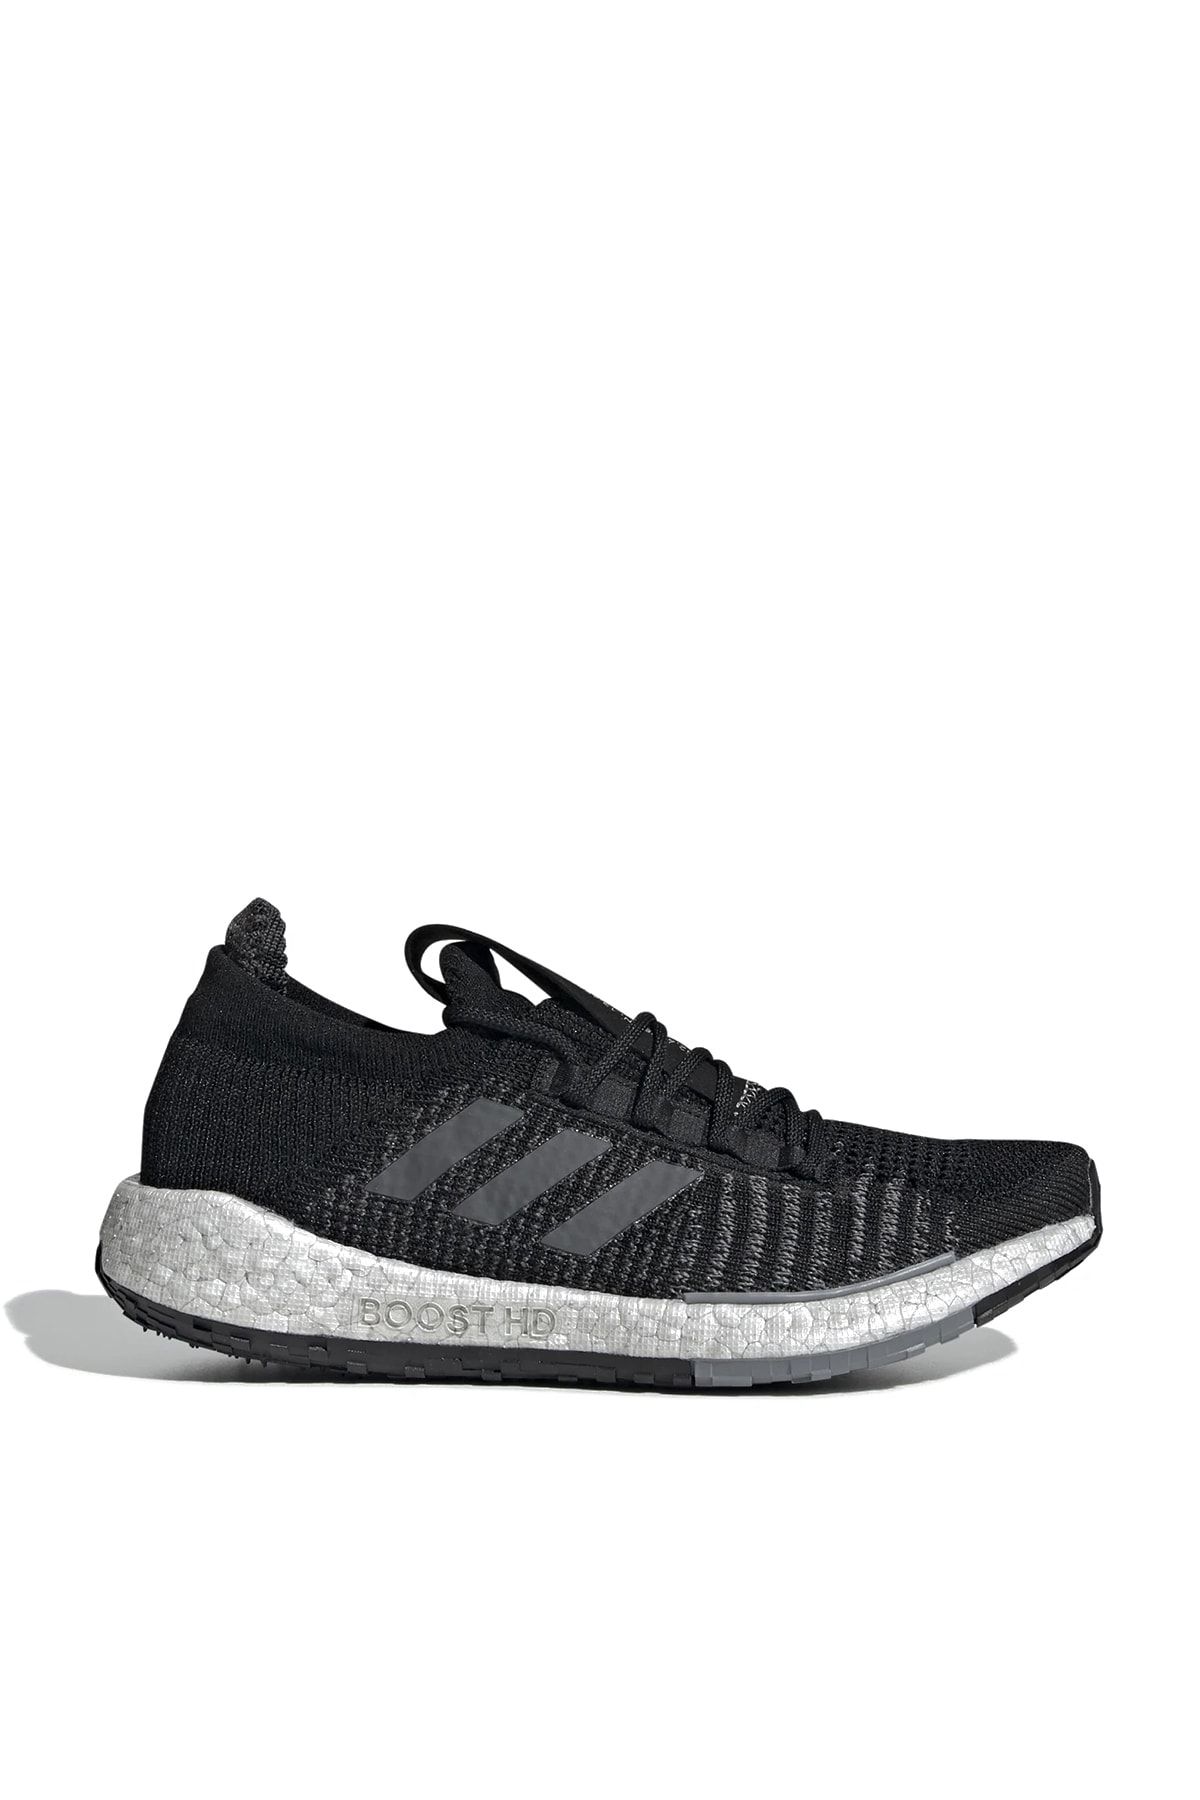 adidas Unisex  Siyah  Koşu Ayakkabısı Pulseboost Hd W